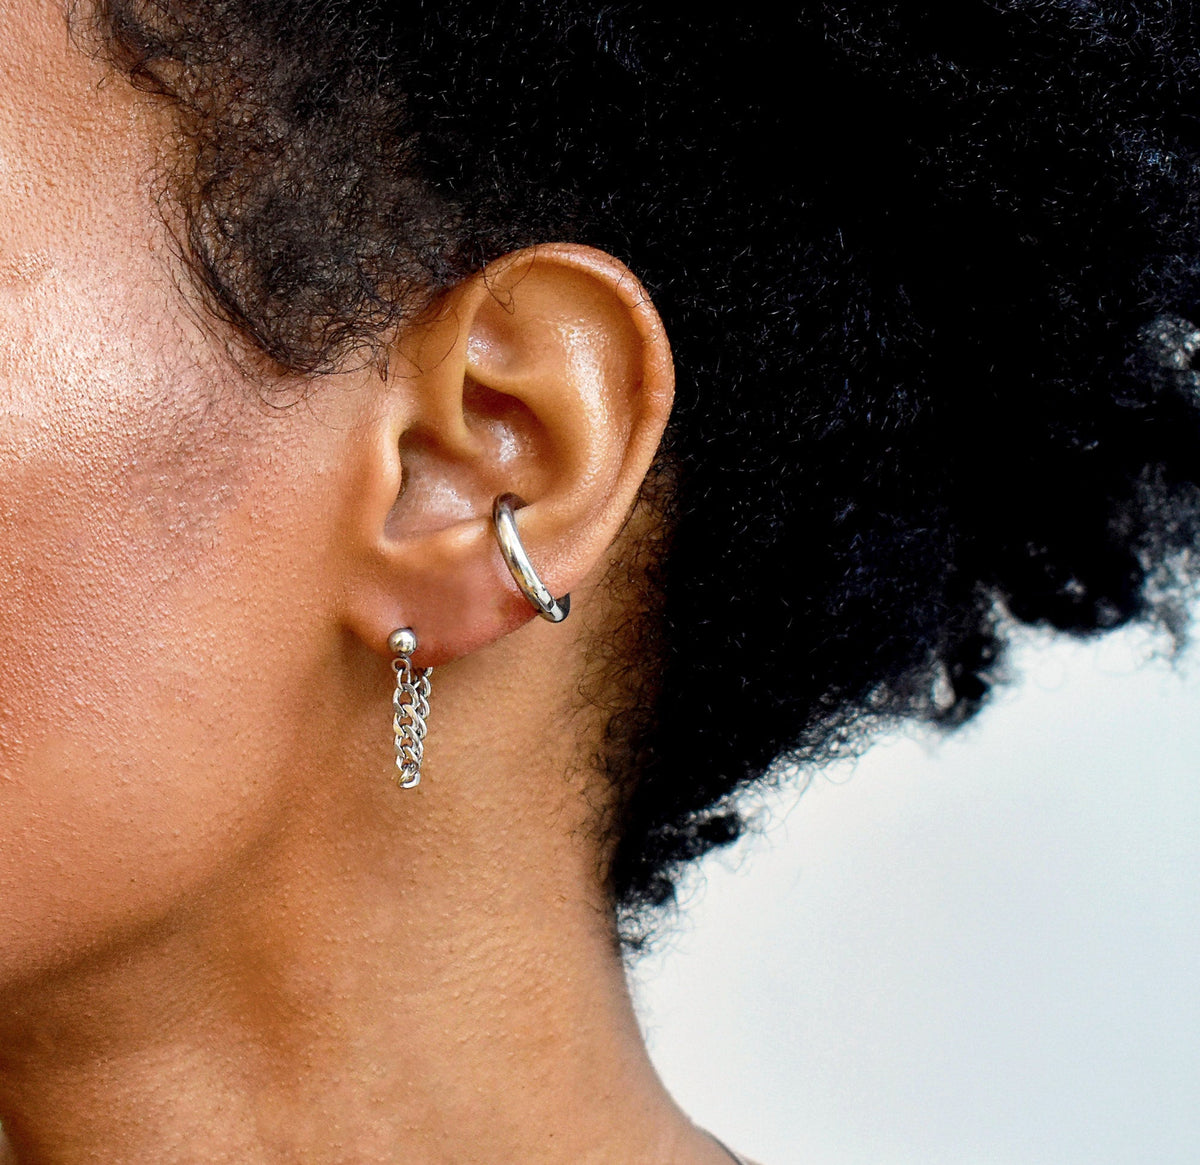 silver chain earring waterproof jewelry